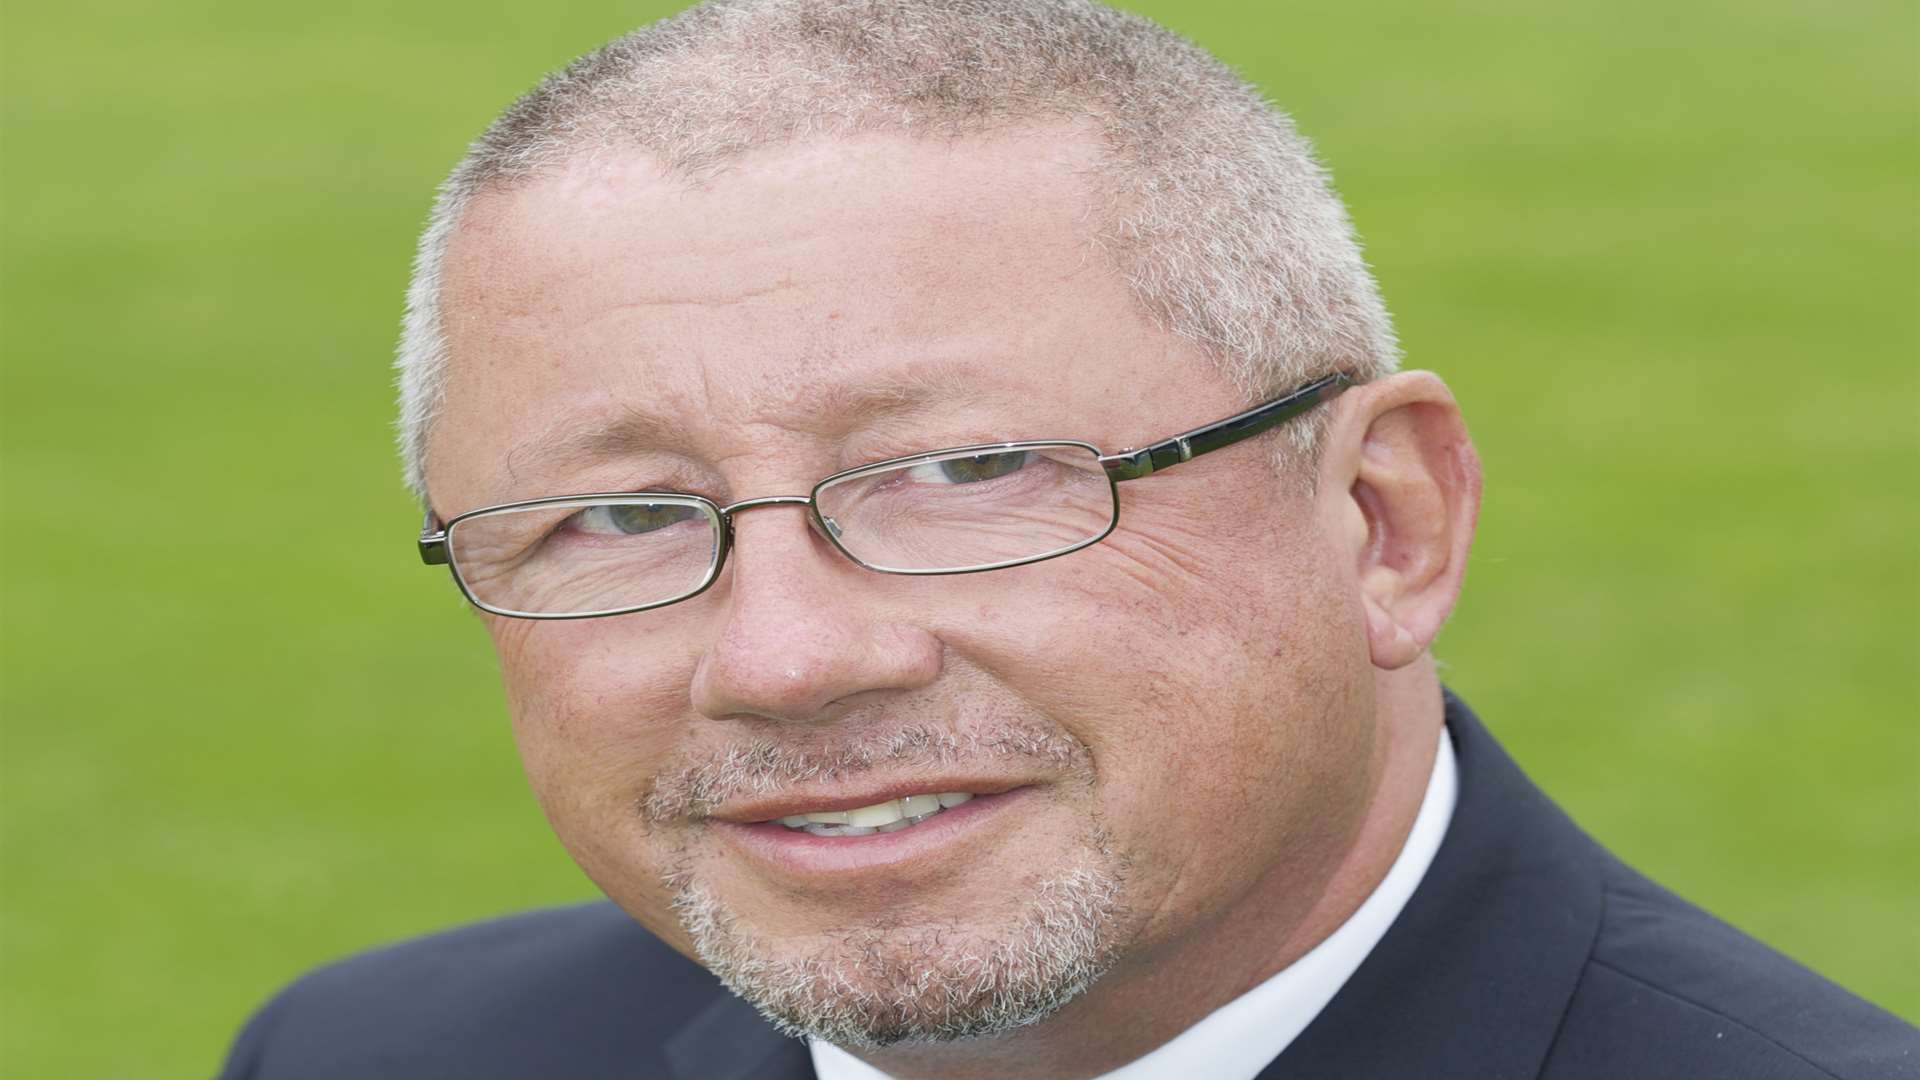 Gillingham FC chairman Paul Scally